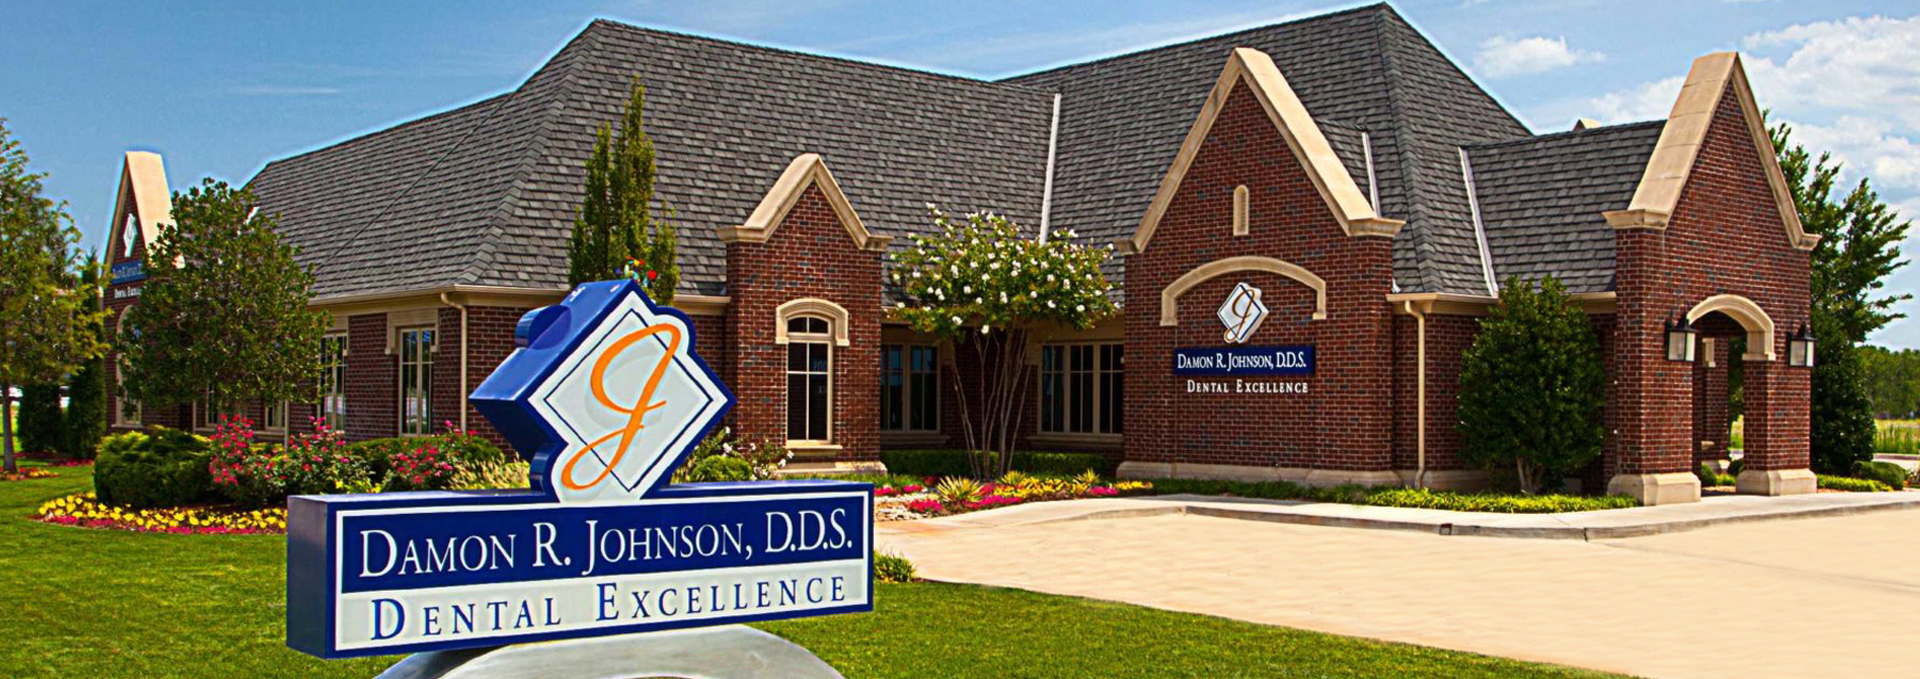 Damon R. Johnson DDS Dental Excellence, Dentist in Edmond OK